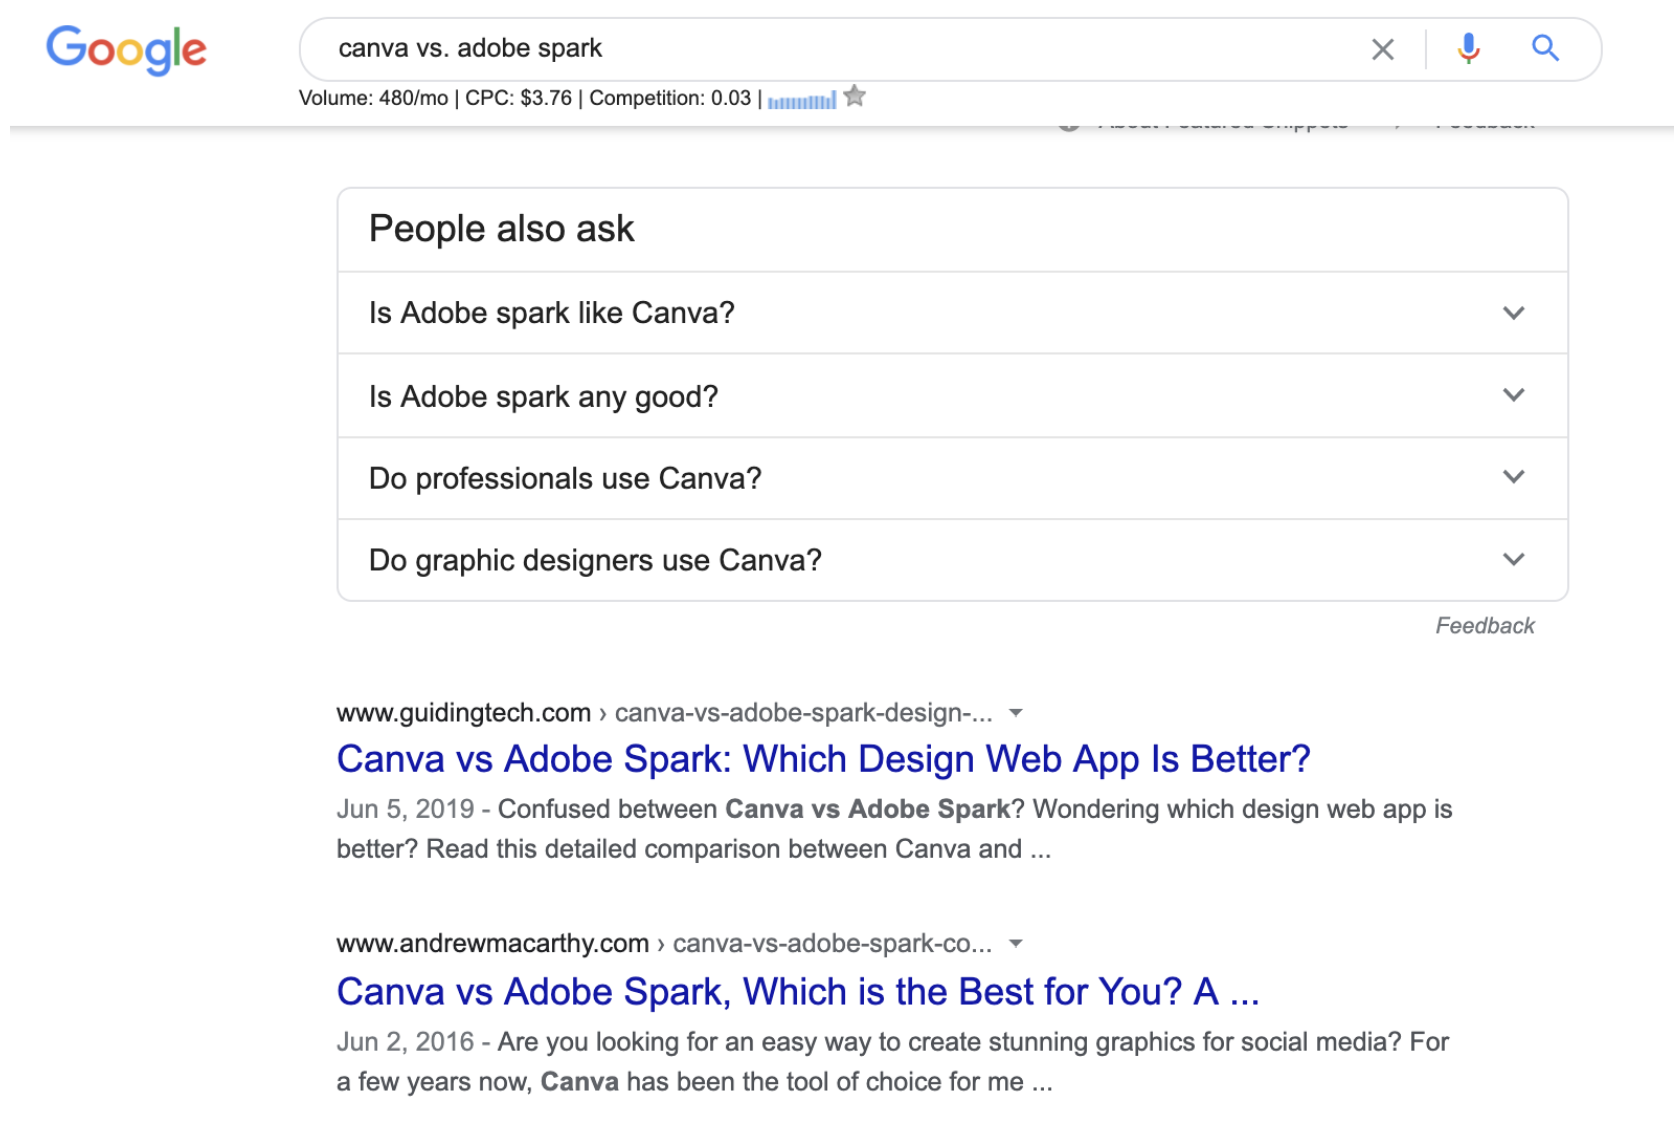 Canva vs Adobe Spark - Top4 Marketing